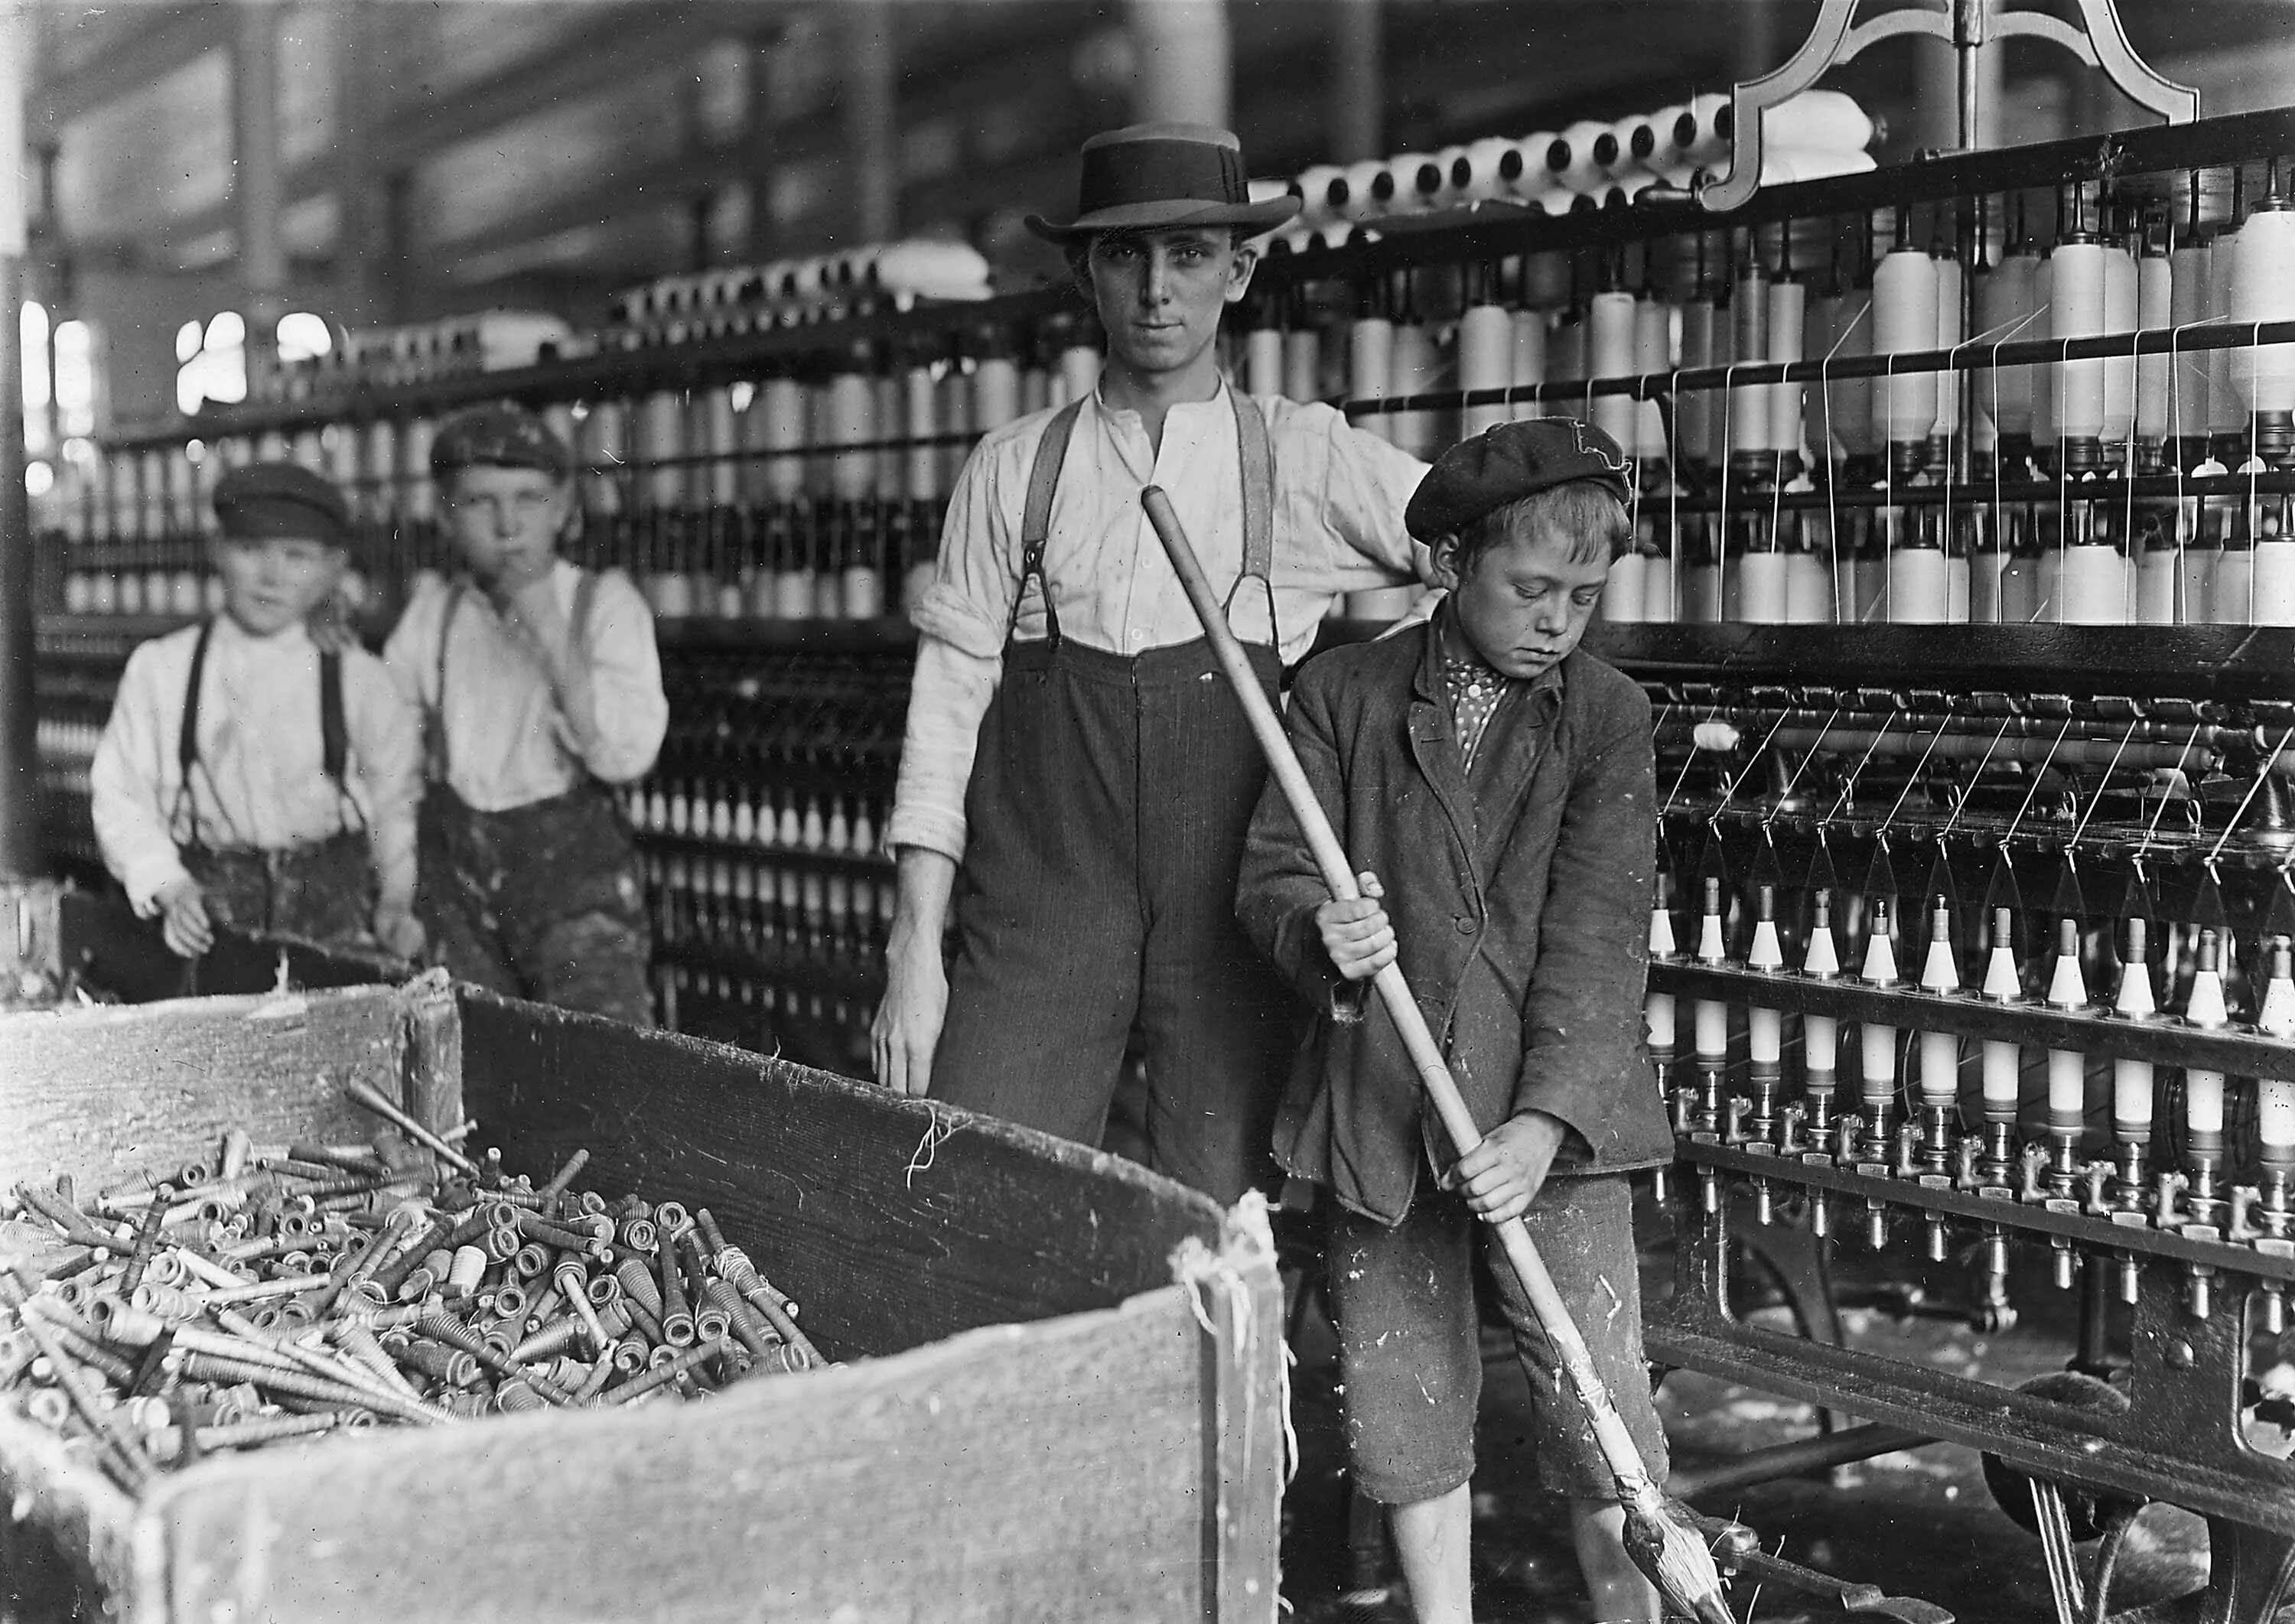 Industry in britain. Детский труд в Англии 19 века. Индустриальное общество США 19 век. Индустриальное общество США 20 век. Детский труд Великобритании 19 век.